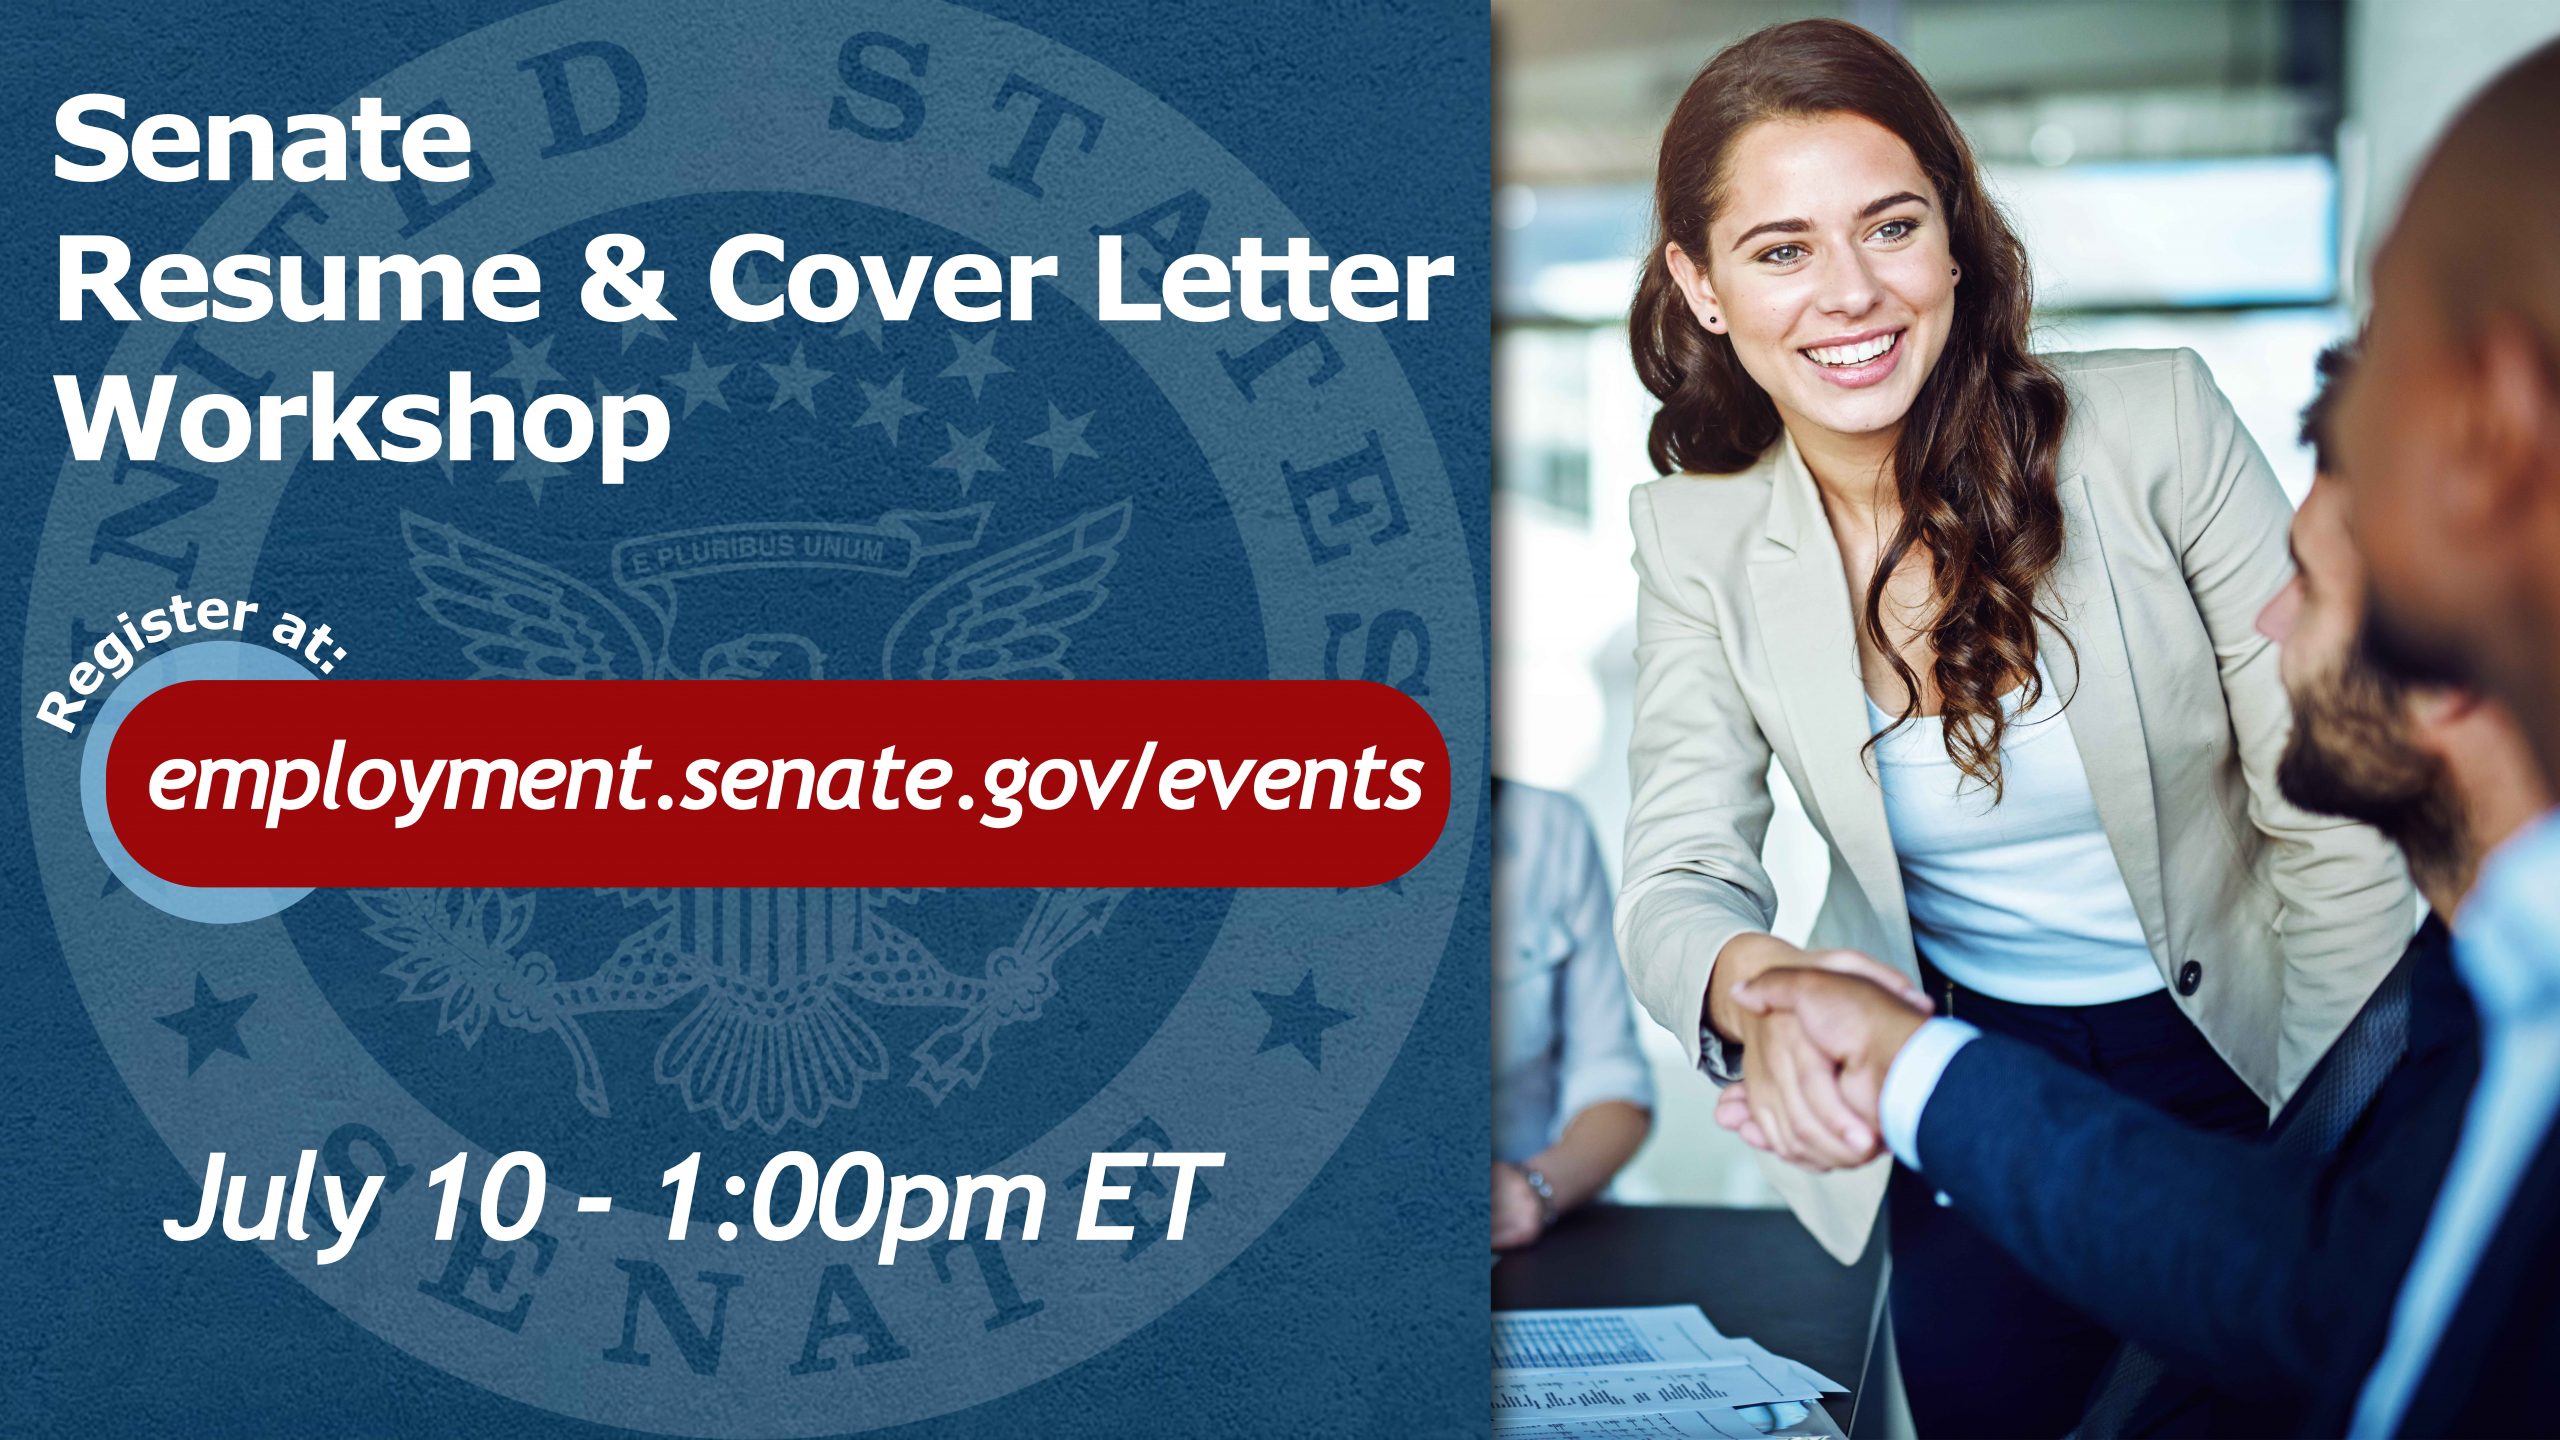 Senate Resume & Cover Letter Workshop promotional image.